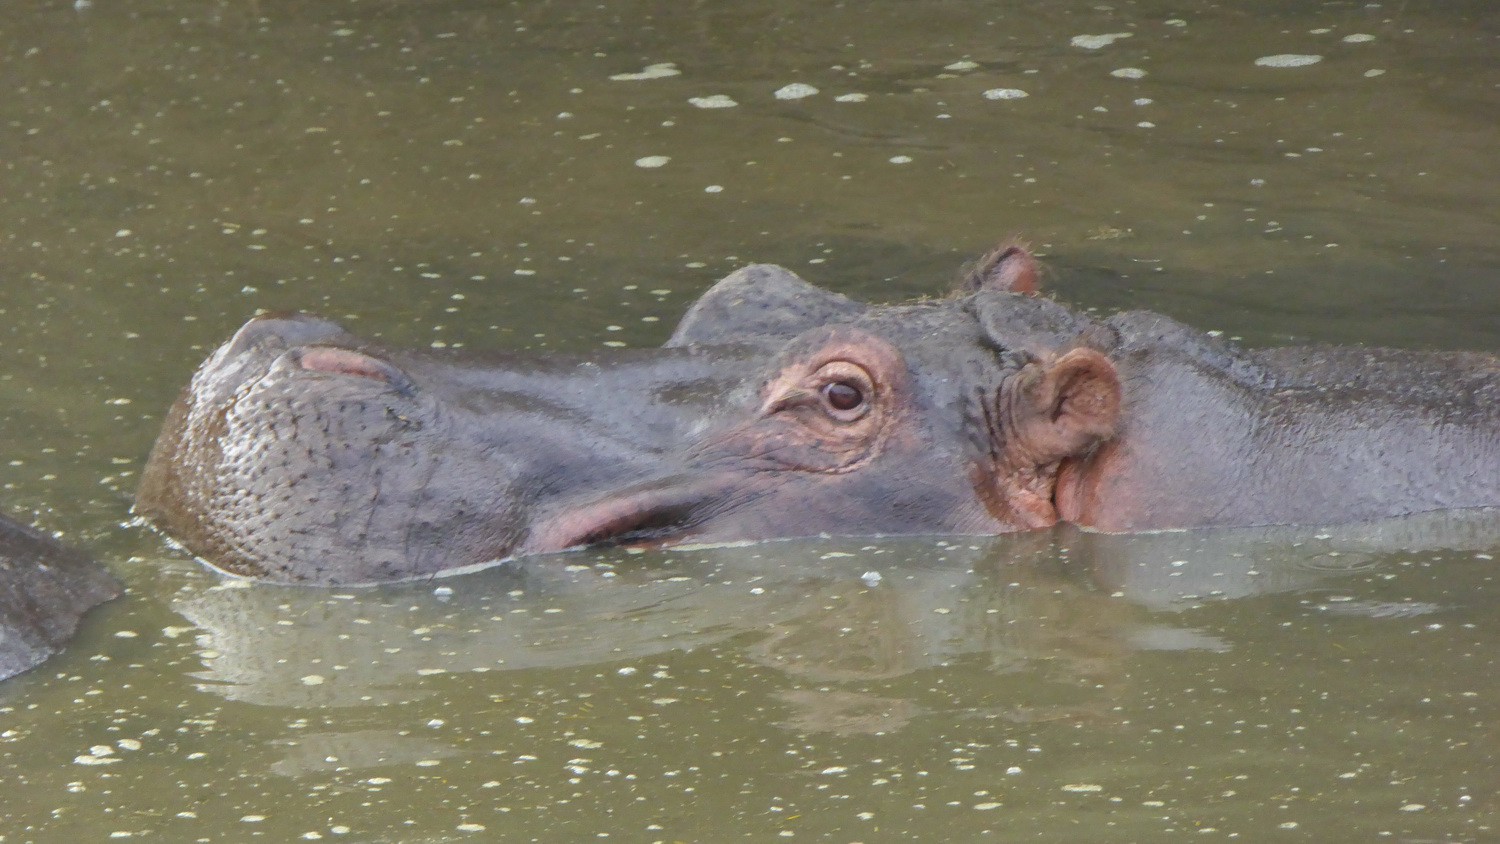 Watching Hippo